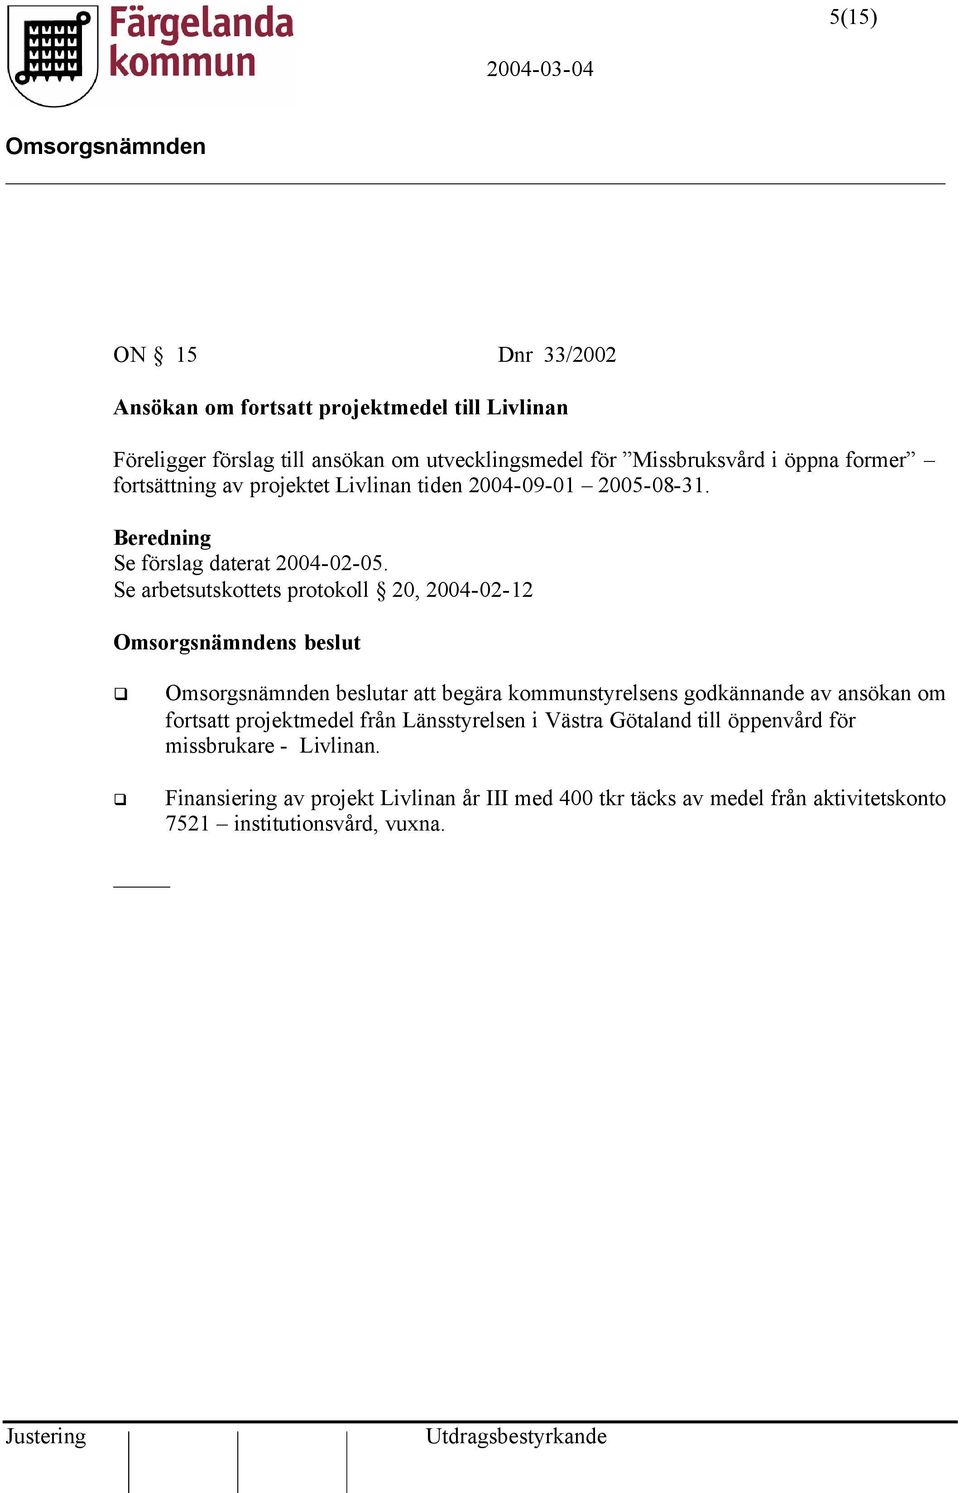 Se arbetsutskottets protokoll 20, 2004-02-12 s beslut beslutar att begära kommunstyrelsens godkännande av ansökan om fortsatt projektmedel från